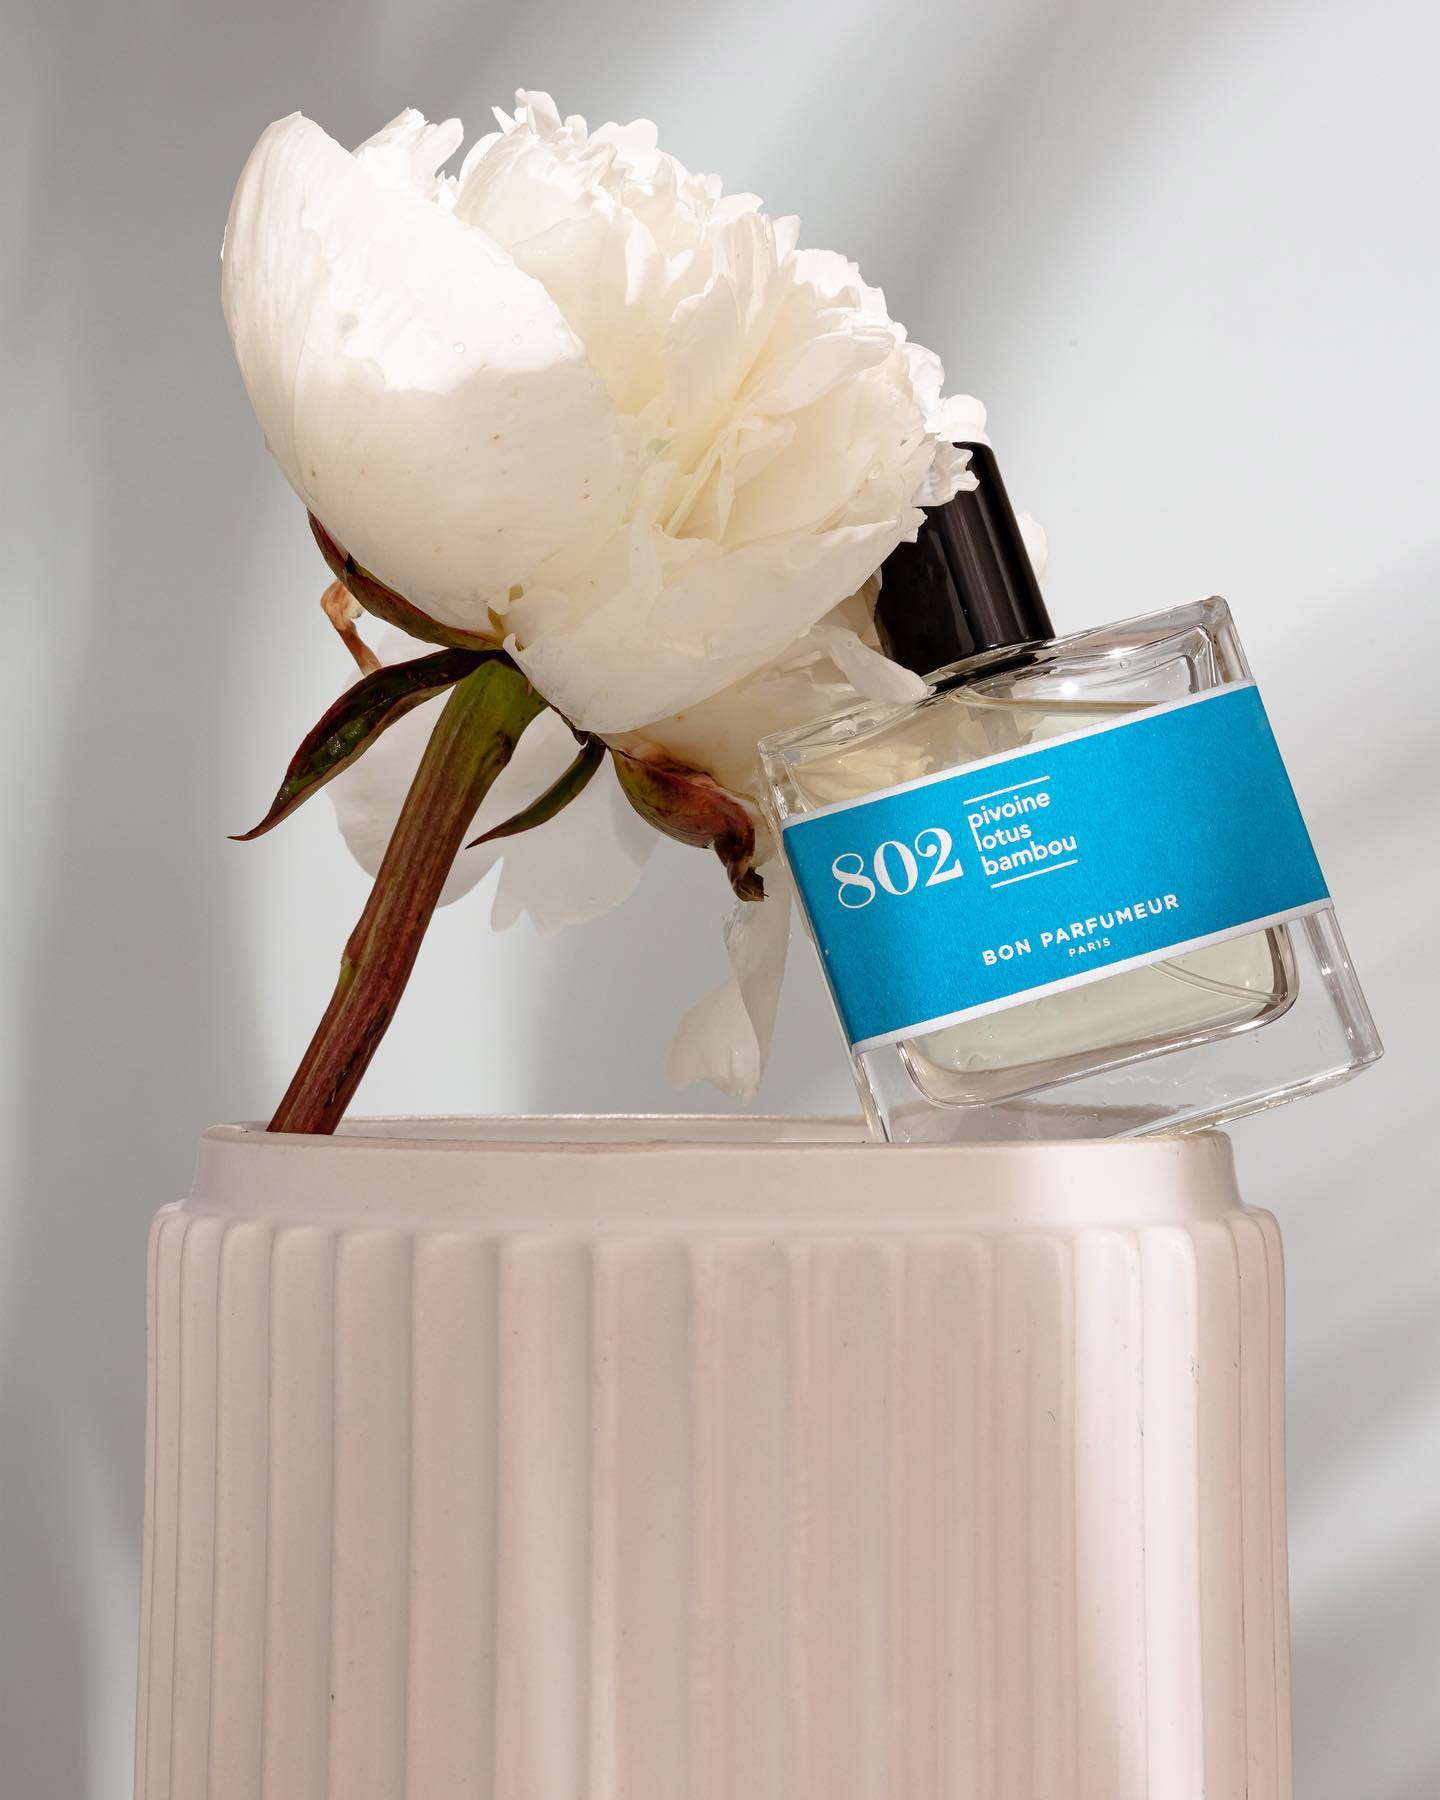 Bon Parfumeur | 802 Pivoine, lotus, bambou 100ML